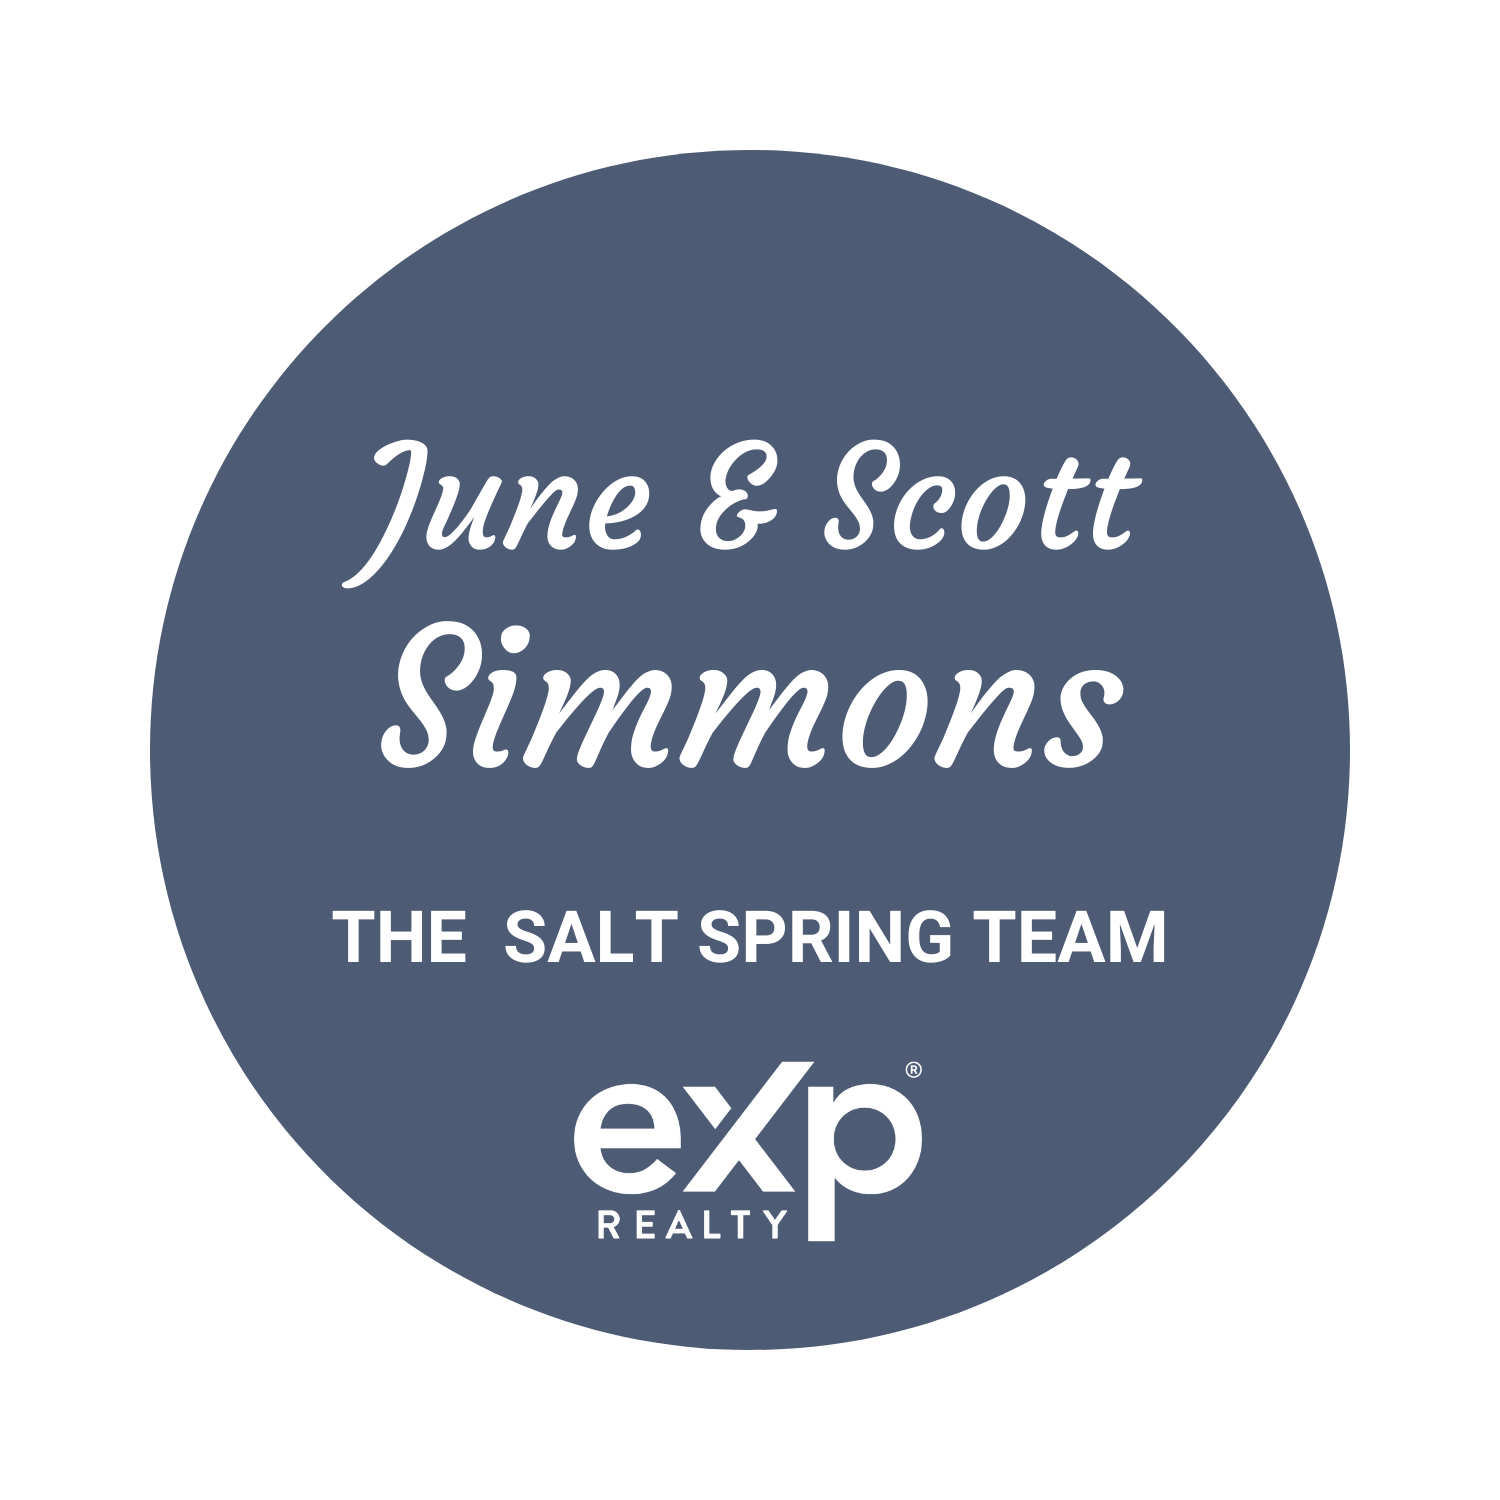 The Salt Spring Team